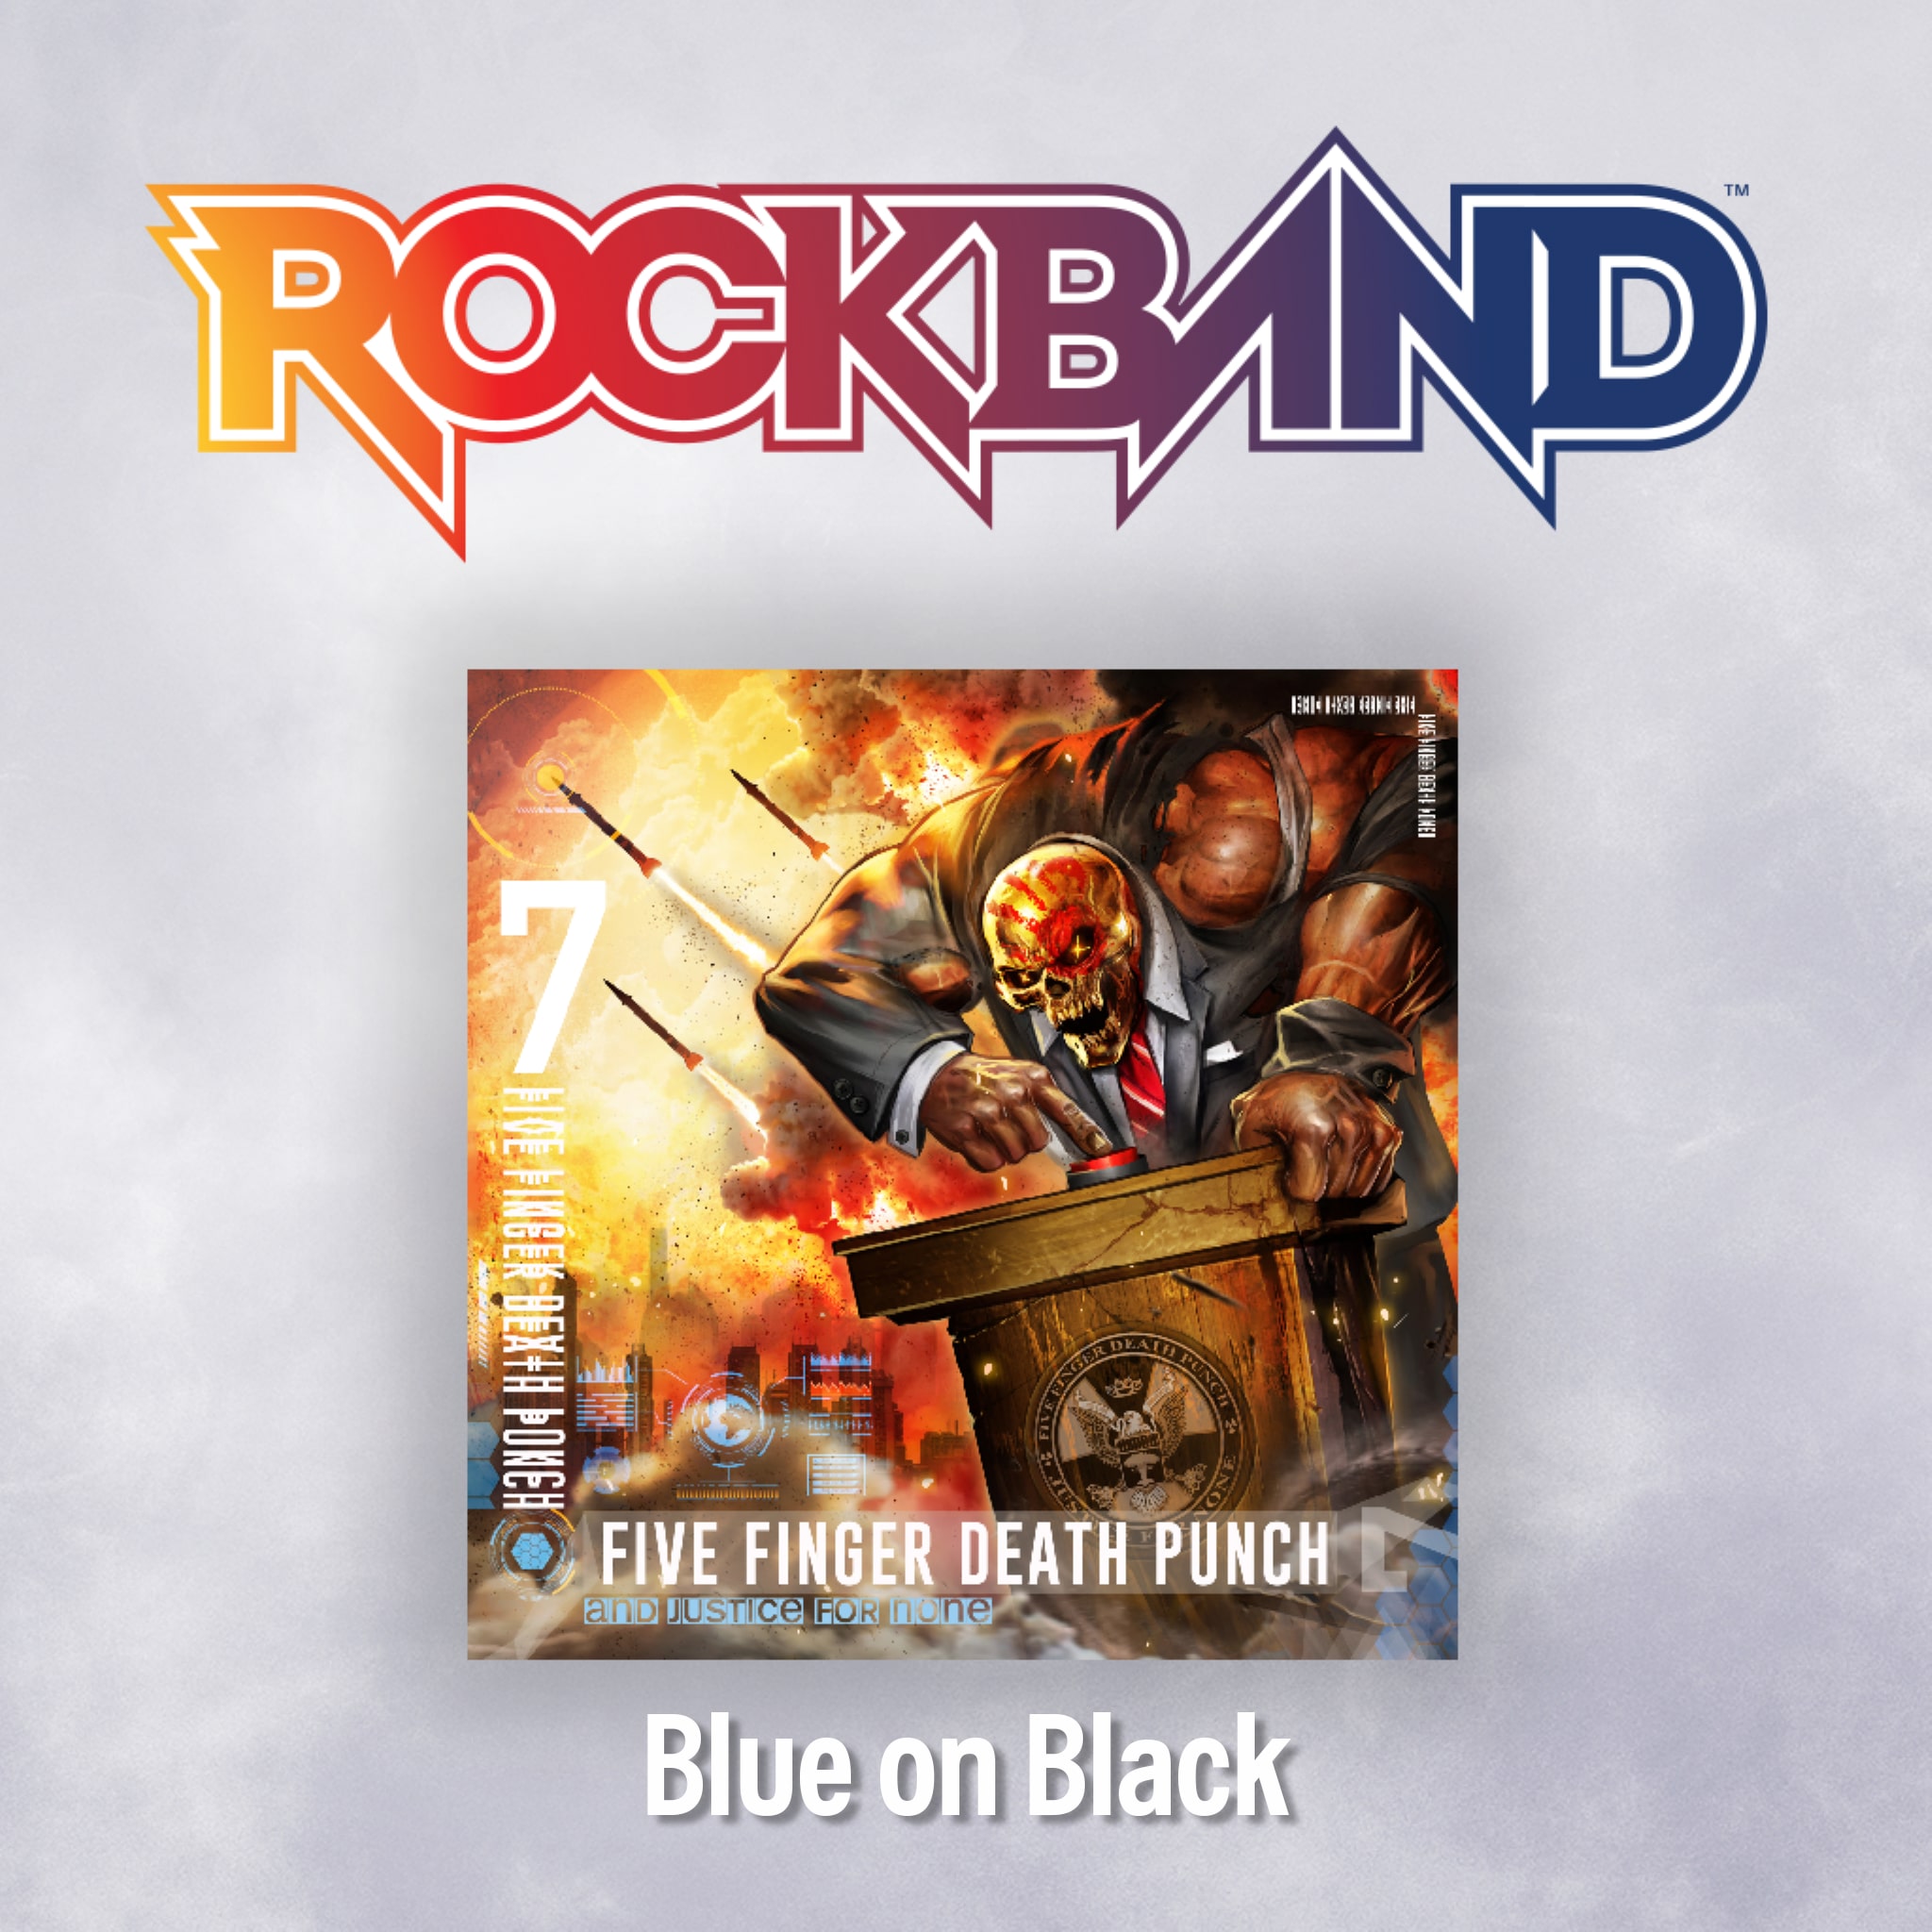 'Blue on Black' - Five Finger Death Punch